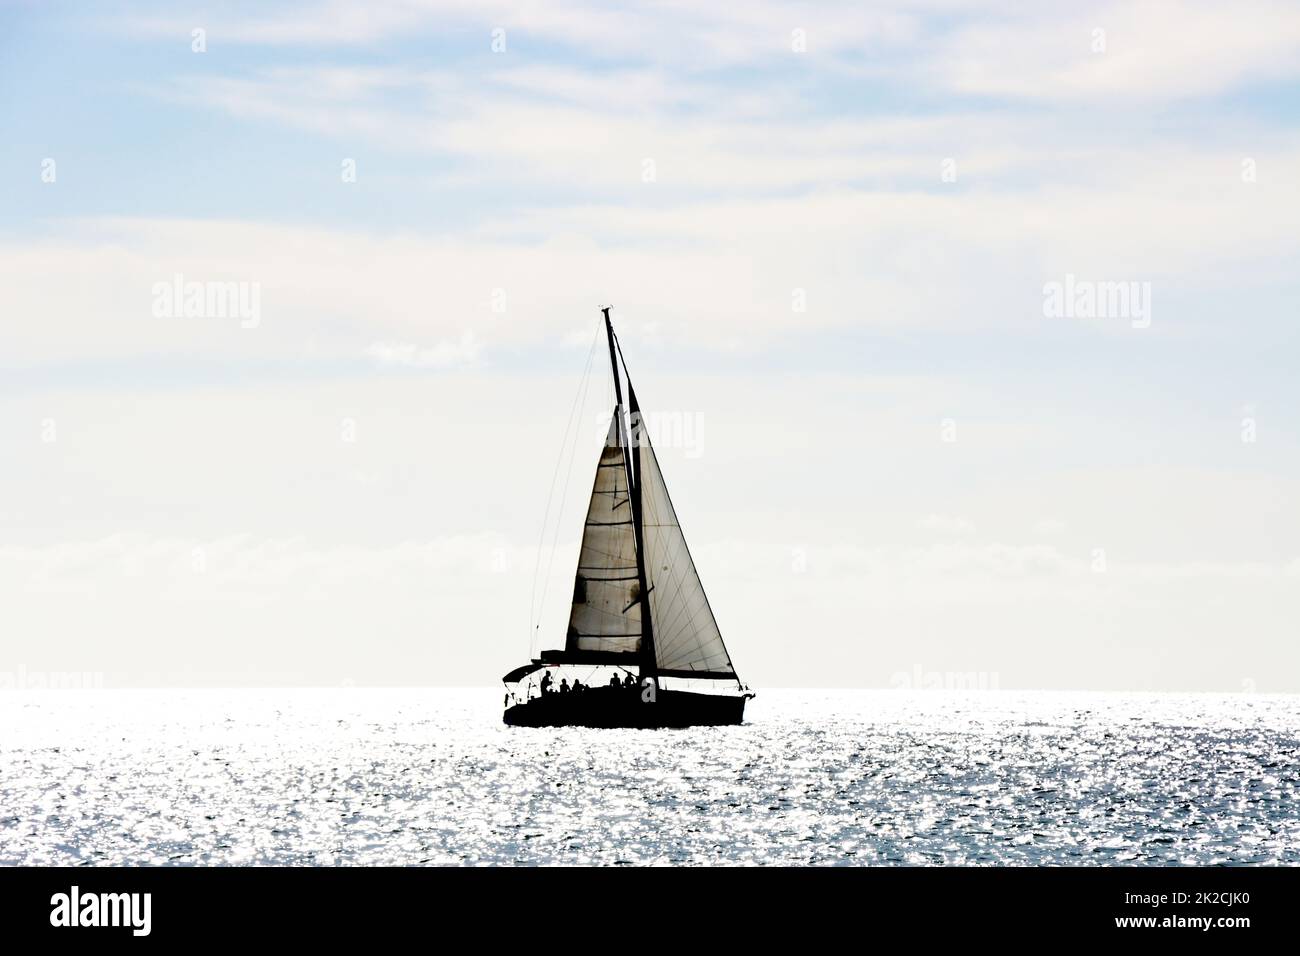 Segelschiff im Gegenlicht - Symbolbild für Freiheit und Fernweh Banque D'Images